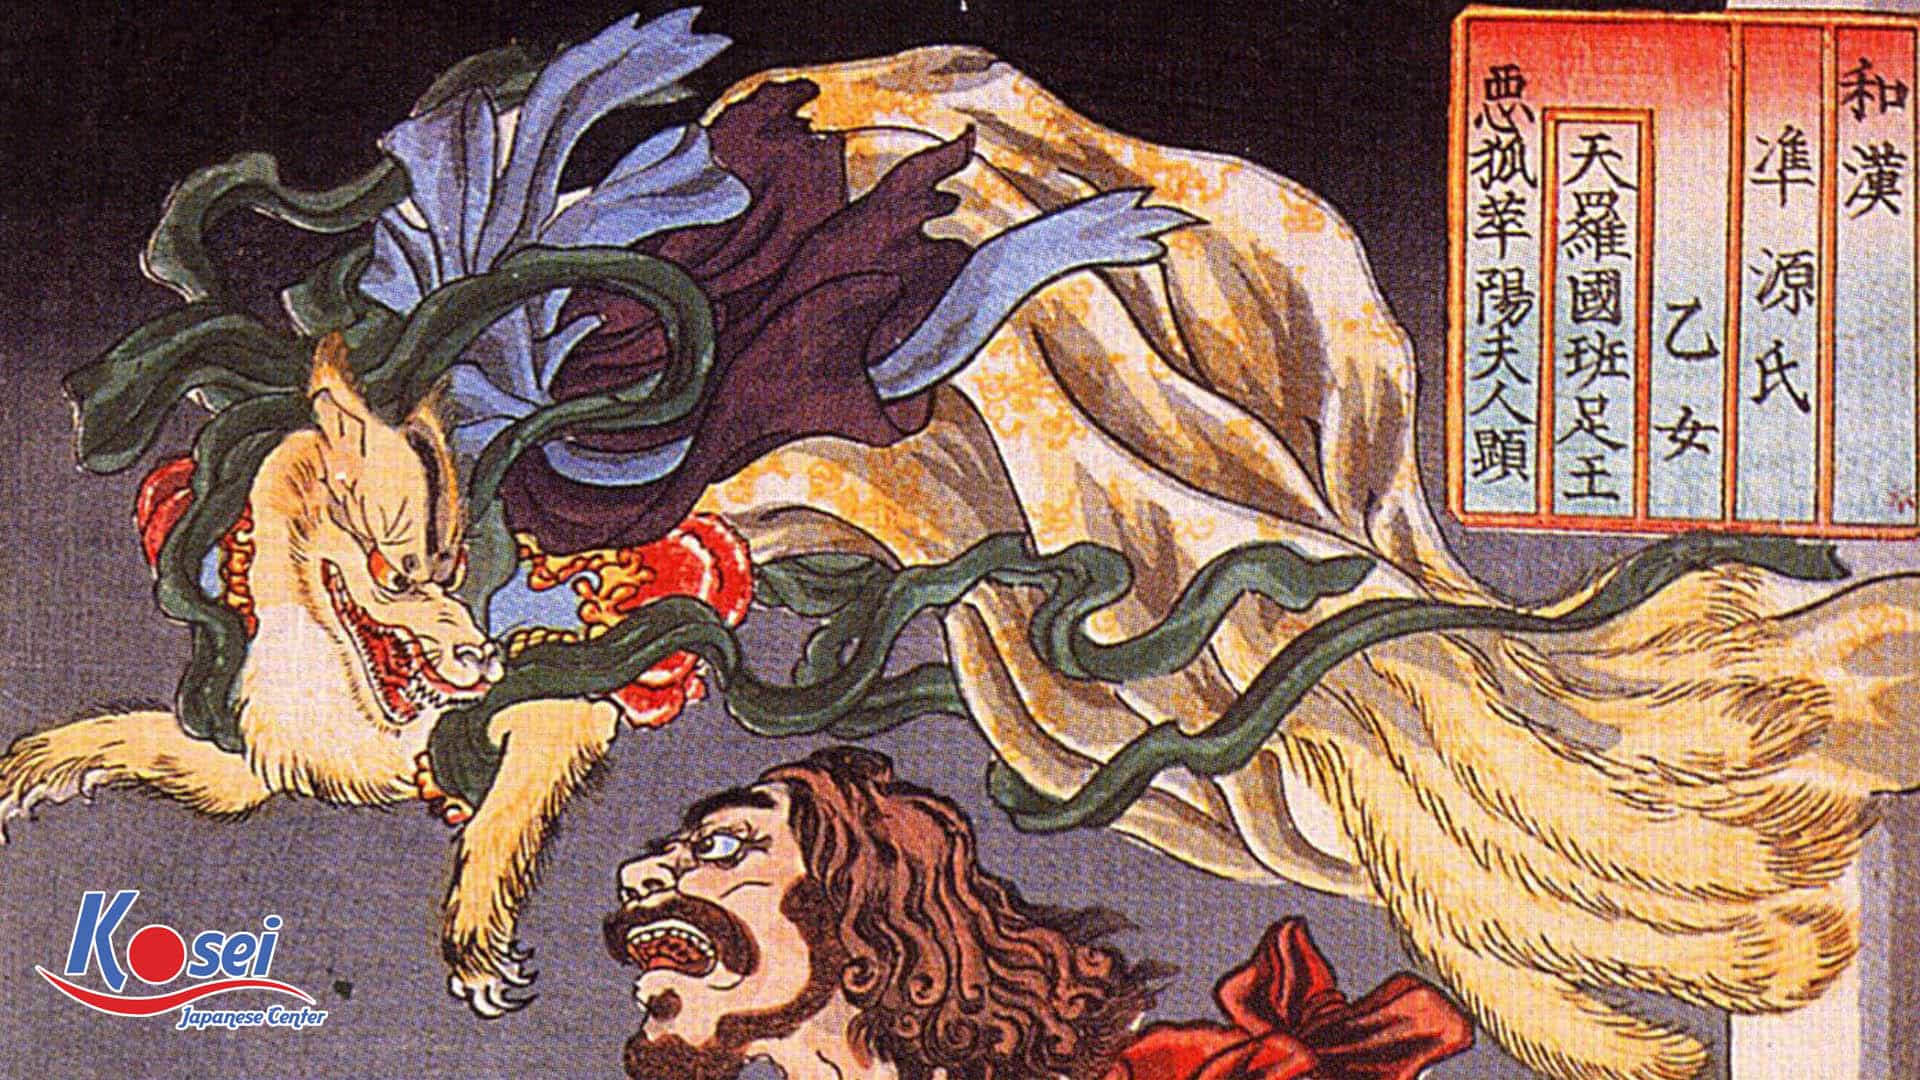 Kitsune no men (狐の面) – Mặt nạ cáo trong văn hóa Nhật Bản